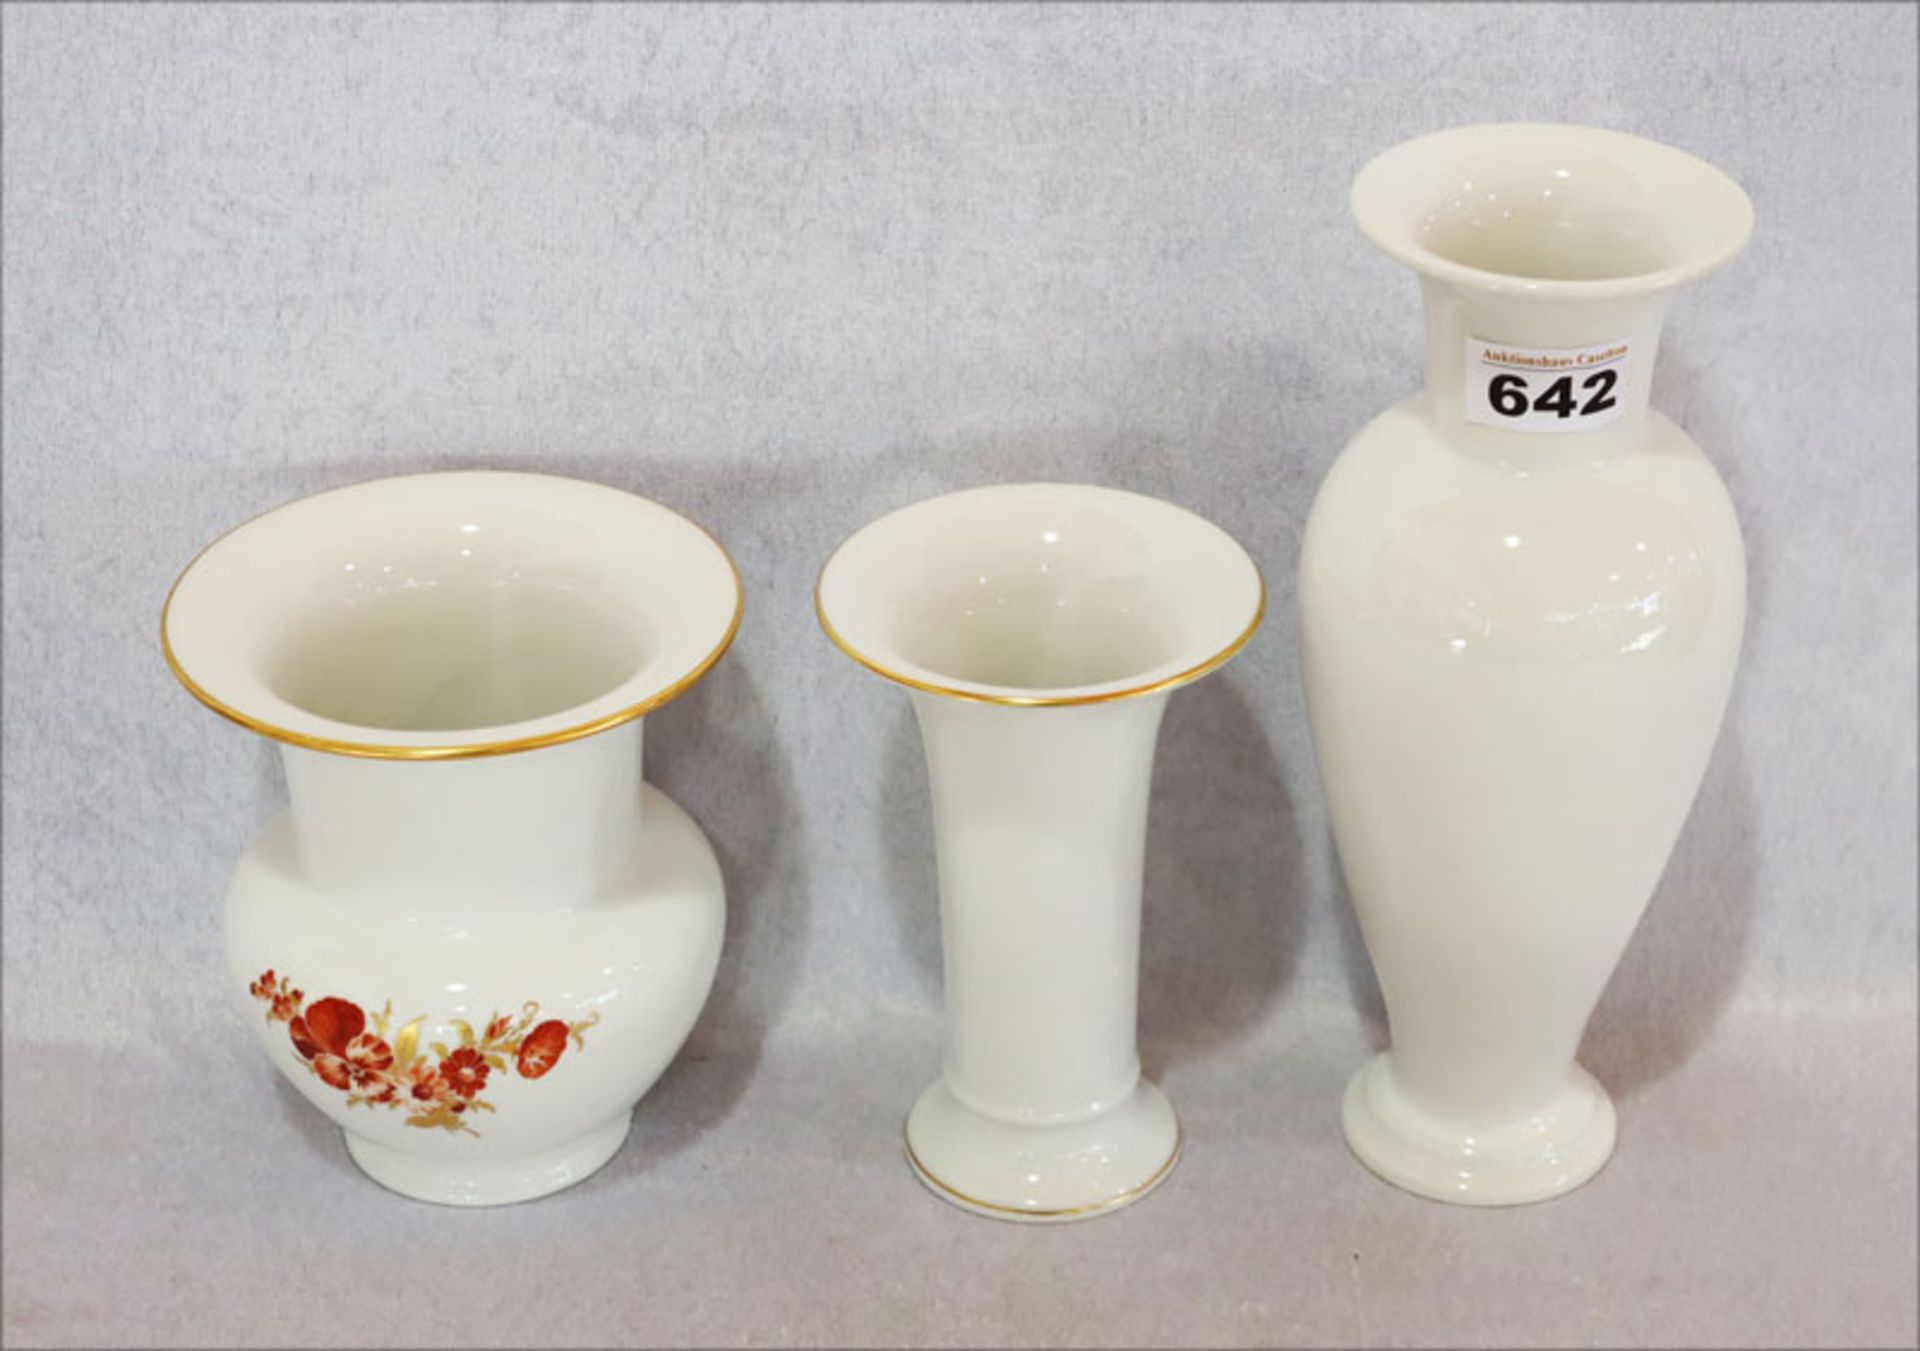 Porzellan Schälchen in sechseckiger Form mit feiner Watteau- und Blumenmalerei, Golddekor, gemarkt